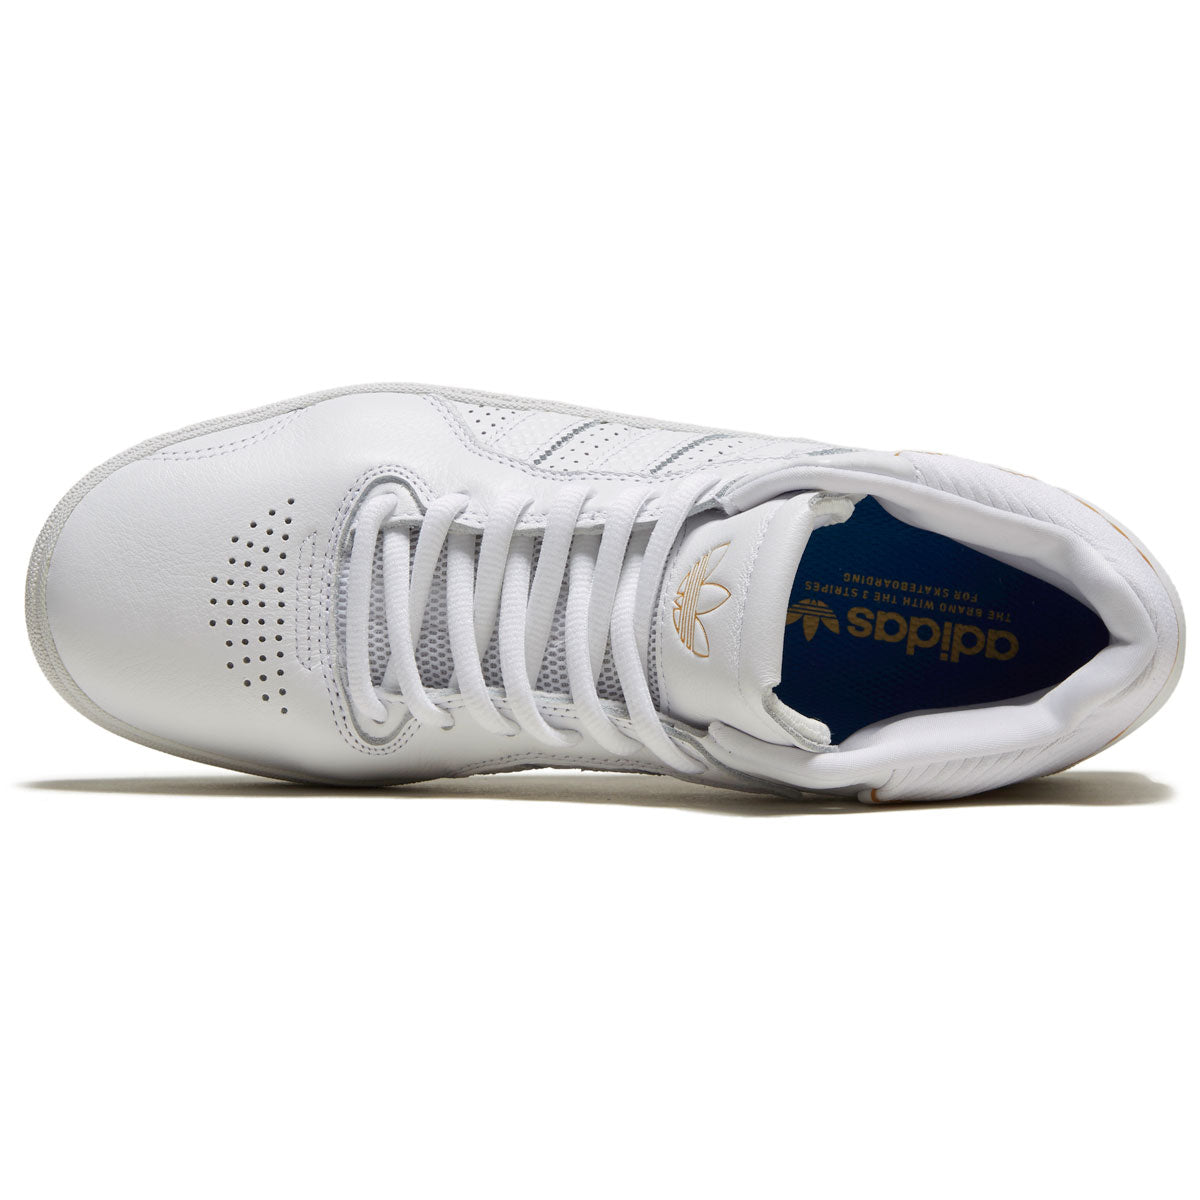 Adidas Tyshawn Shoes - White/White/Gold Metallic image 3